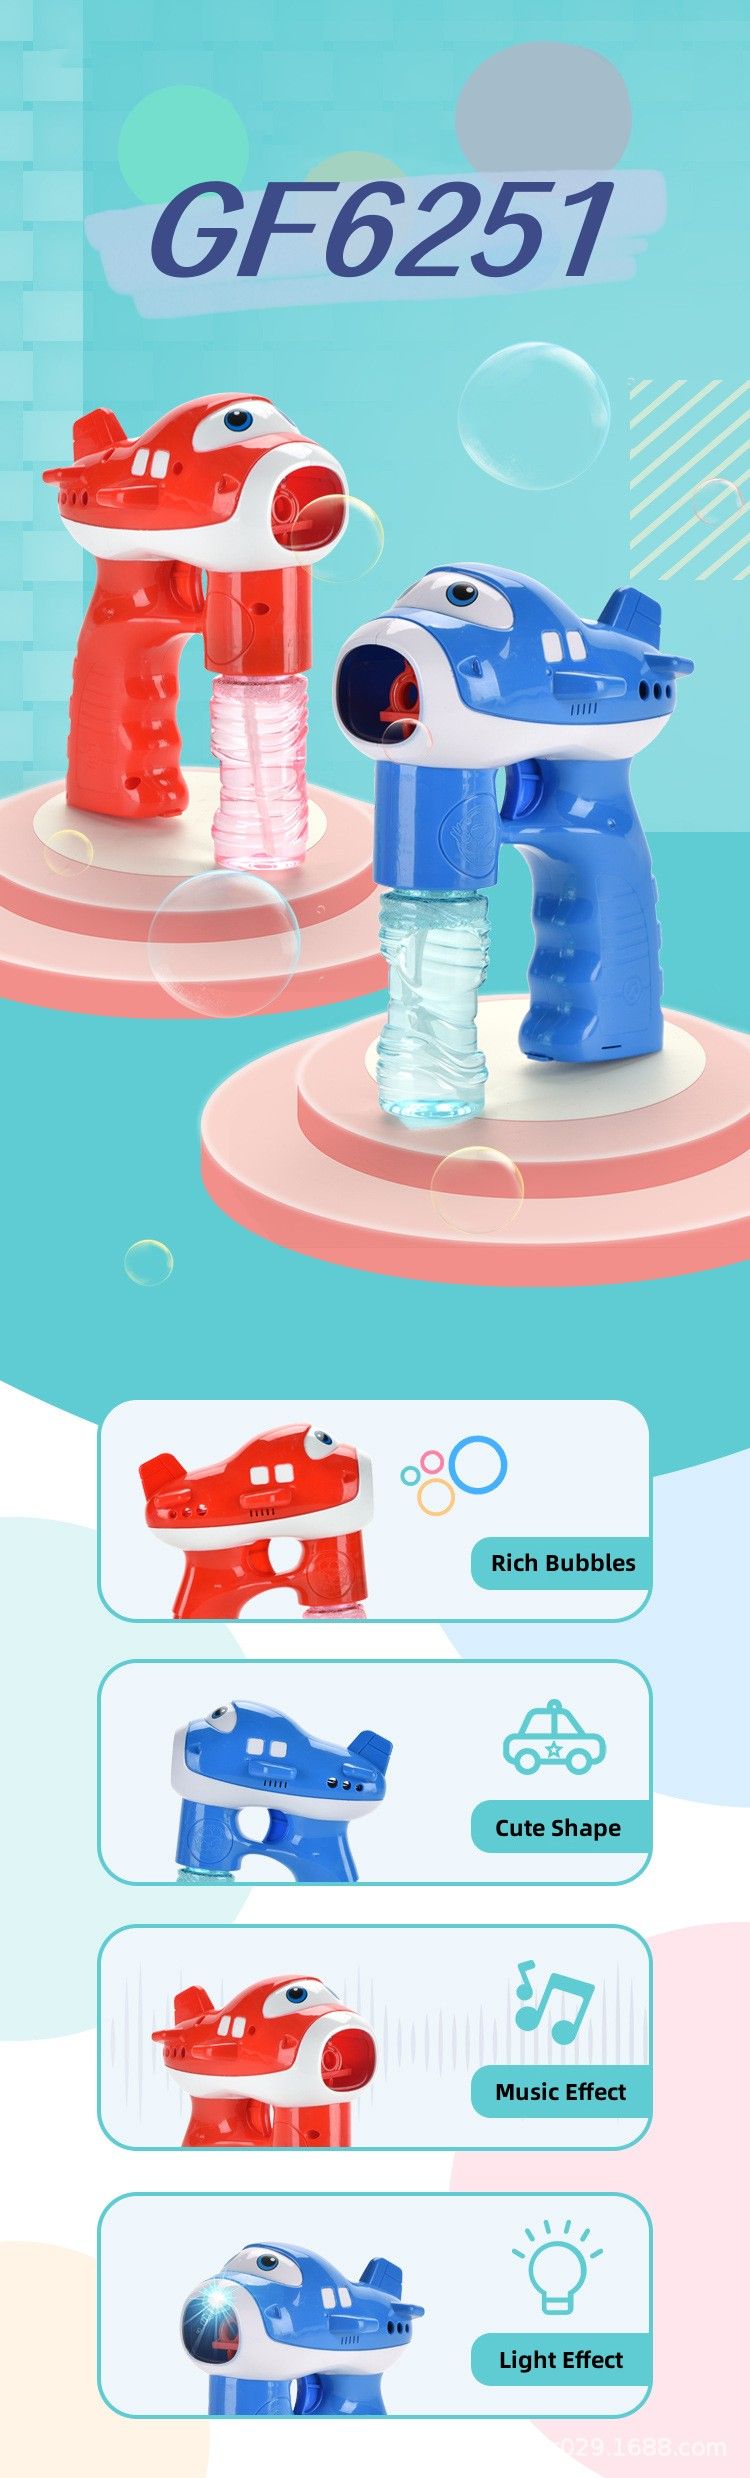 Chow Dudu Bubble Toy GF6251 Elektrysk fleantúch Bubble Gun mei ljocht en muzyk (2)